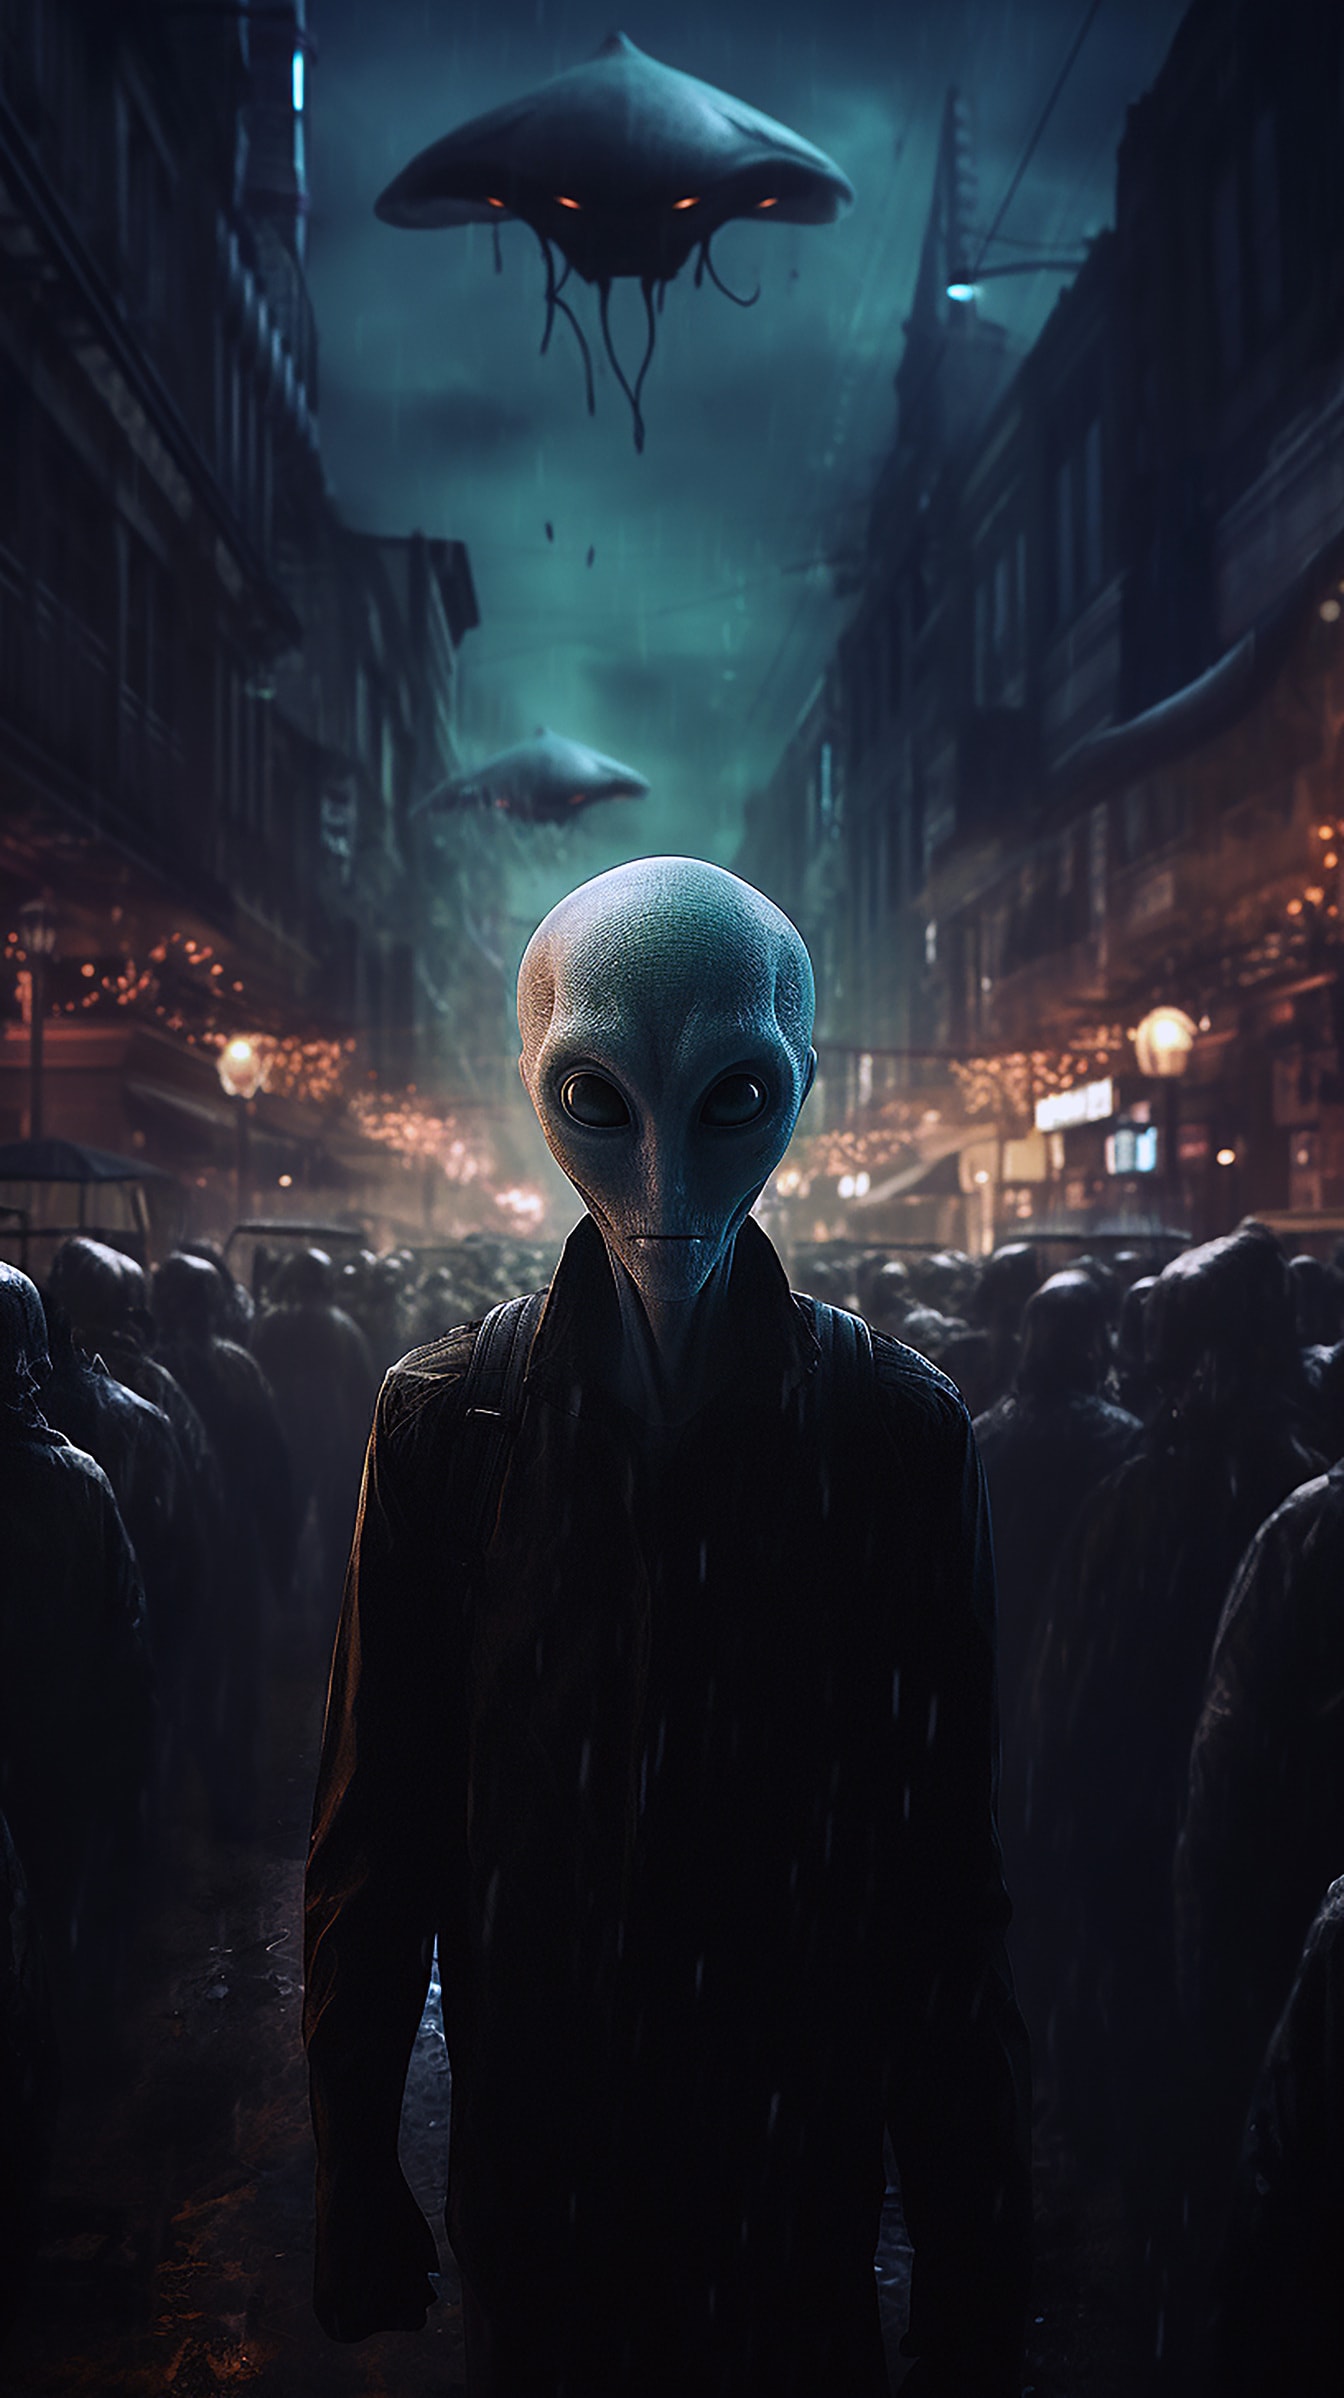 Хуманоидно извънземно на улицата през нощта фентъзи илюстрация на ужасите